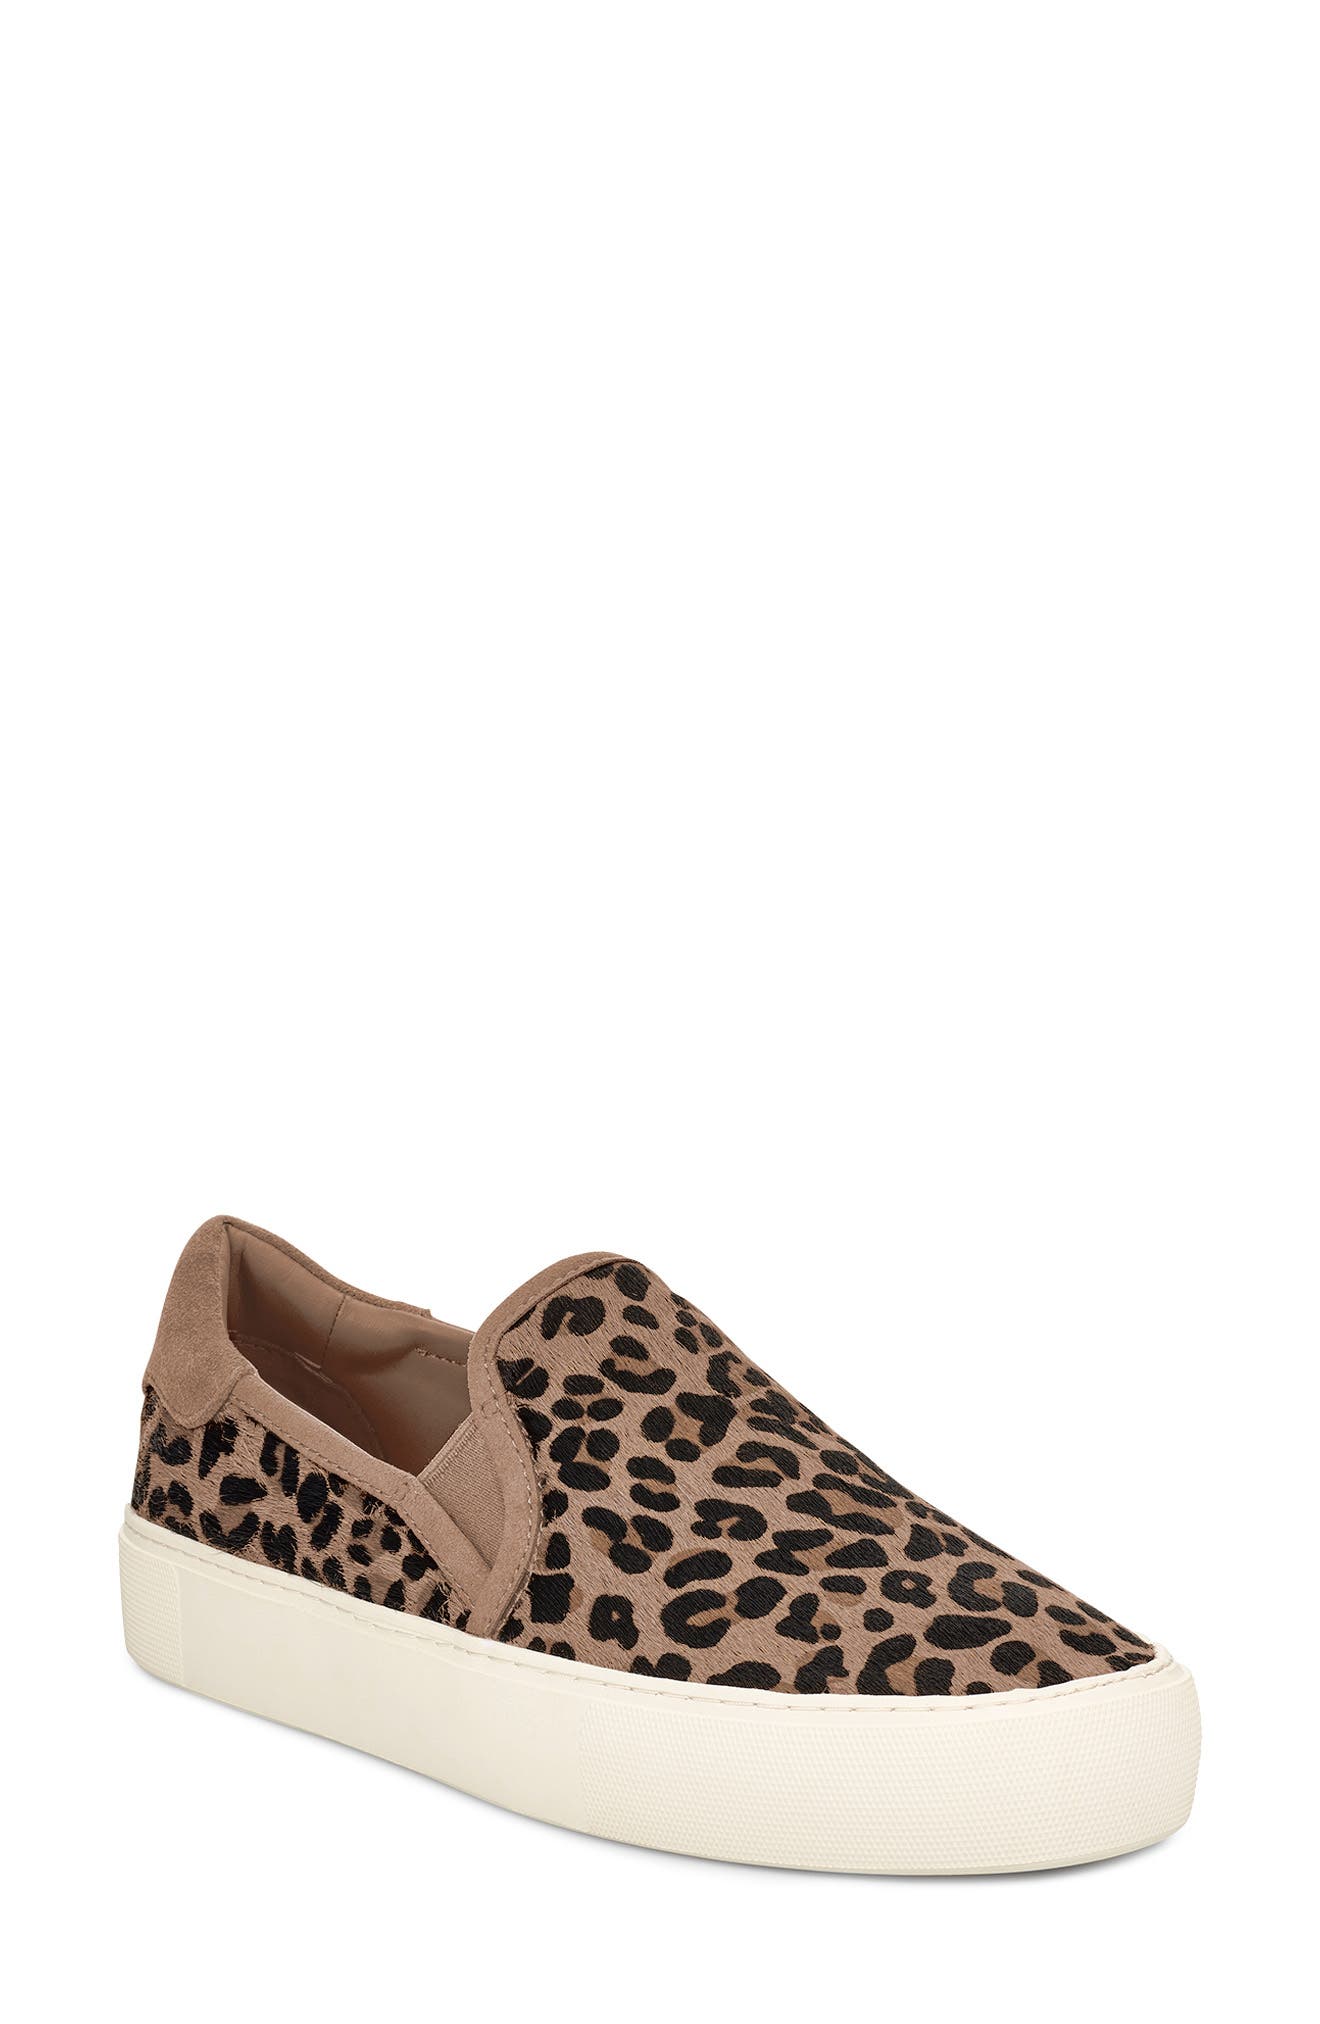 ugg leopard slip on sneakers